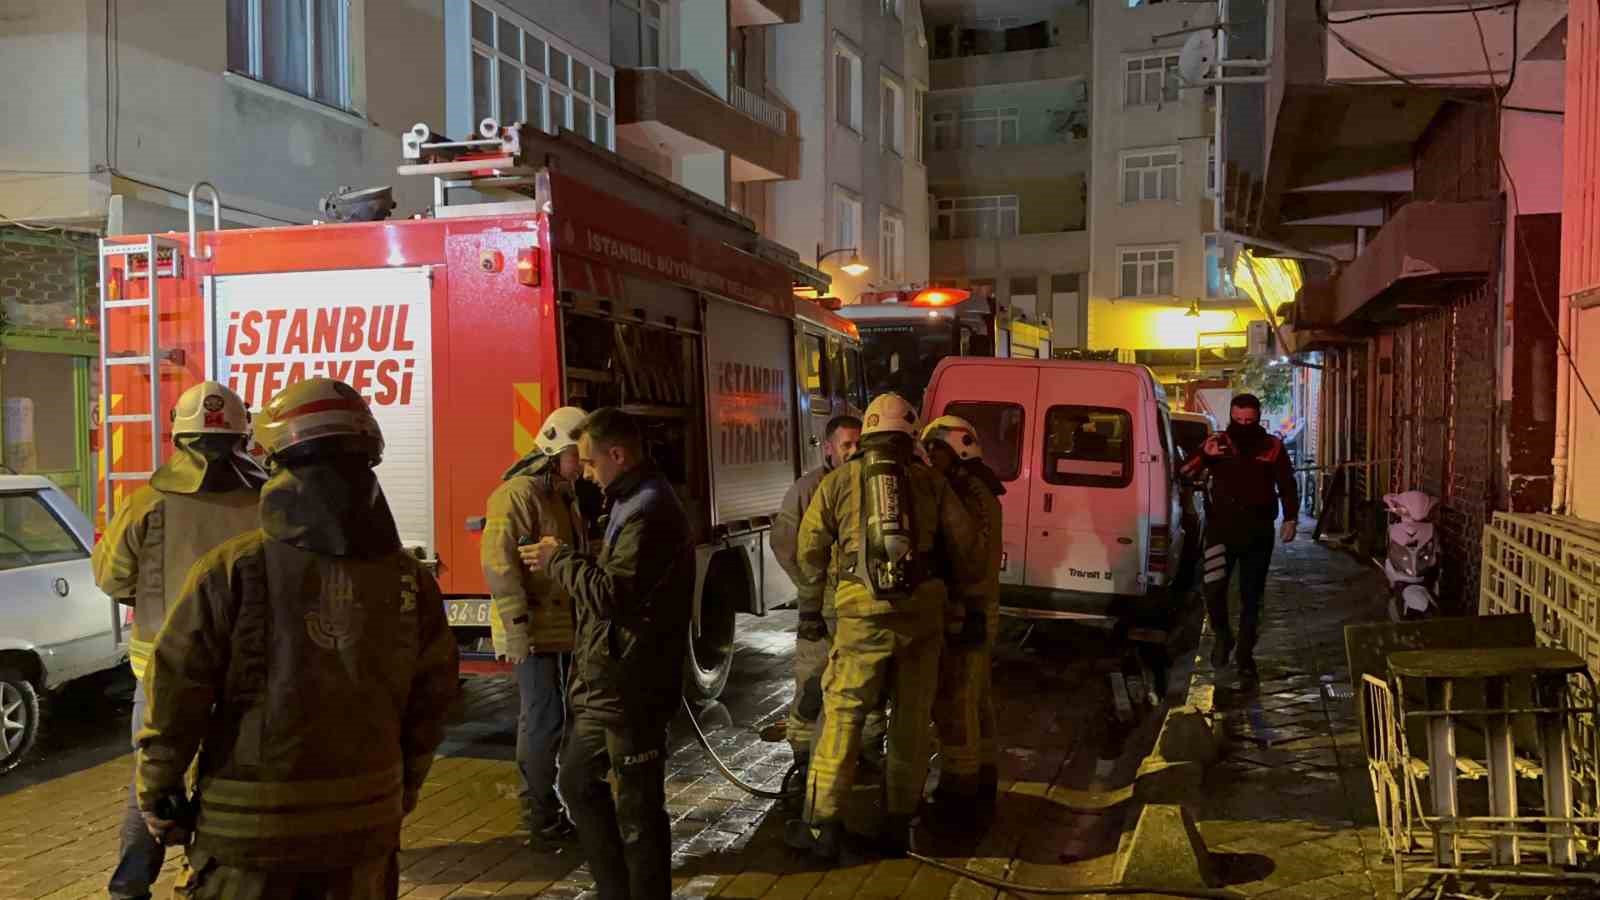 zeytinburnu’nda solunum cihazı evi yaktı: 1 yaralı